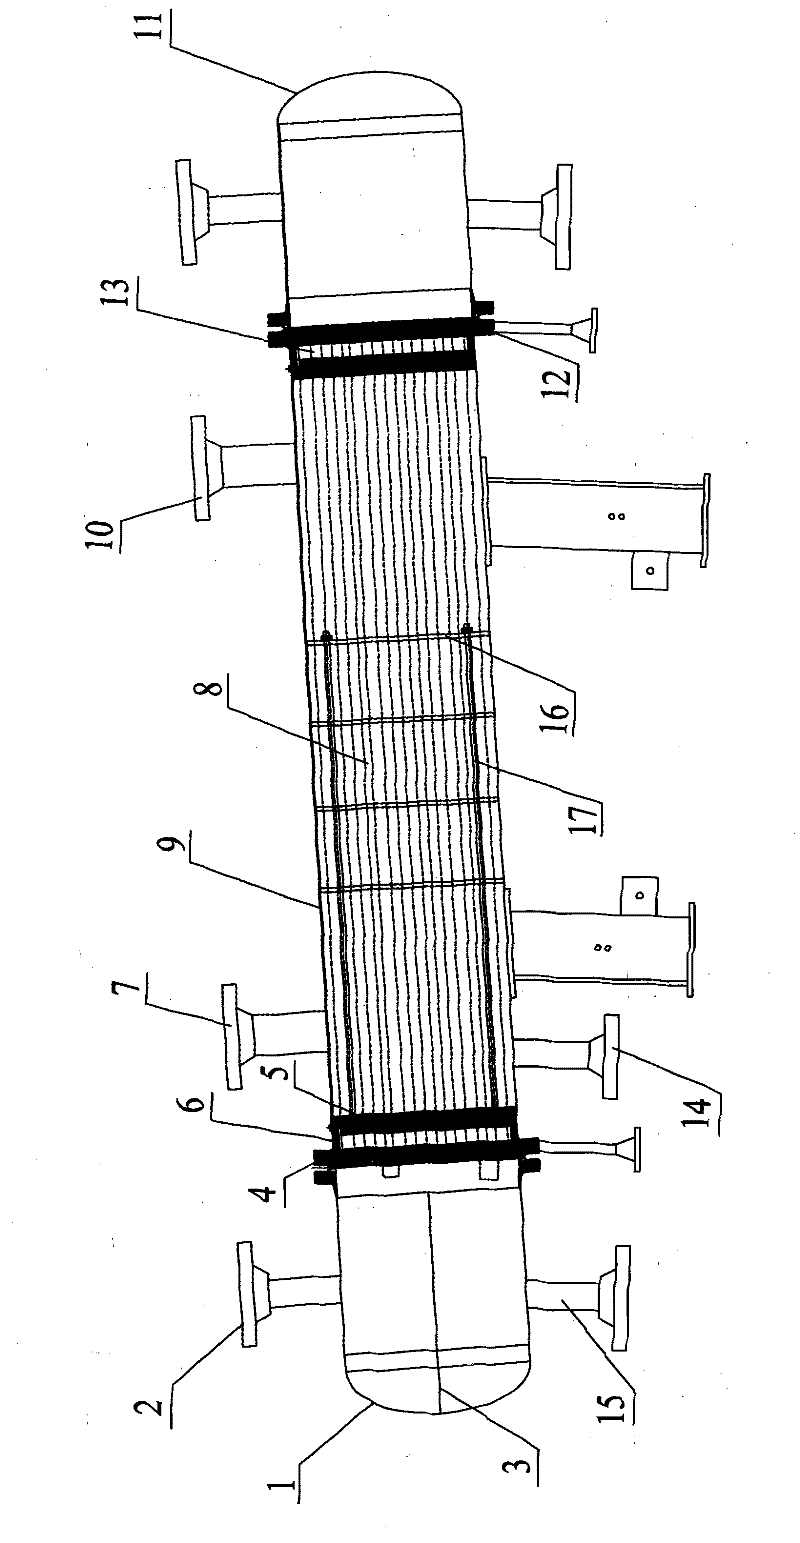 Manufacturing method of dual-tubesheet heat interchanger